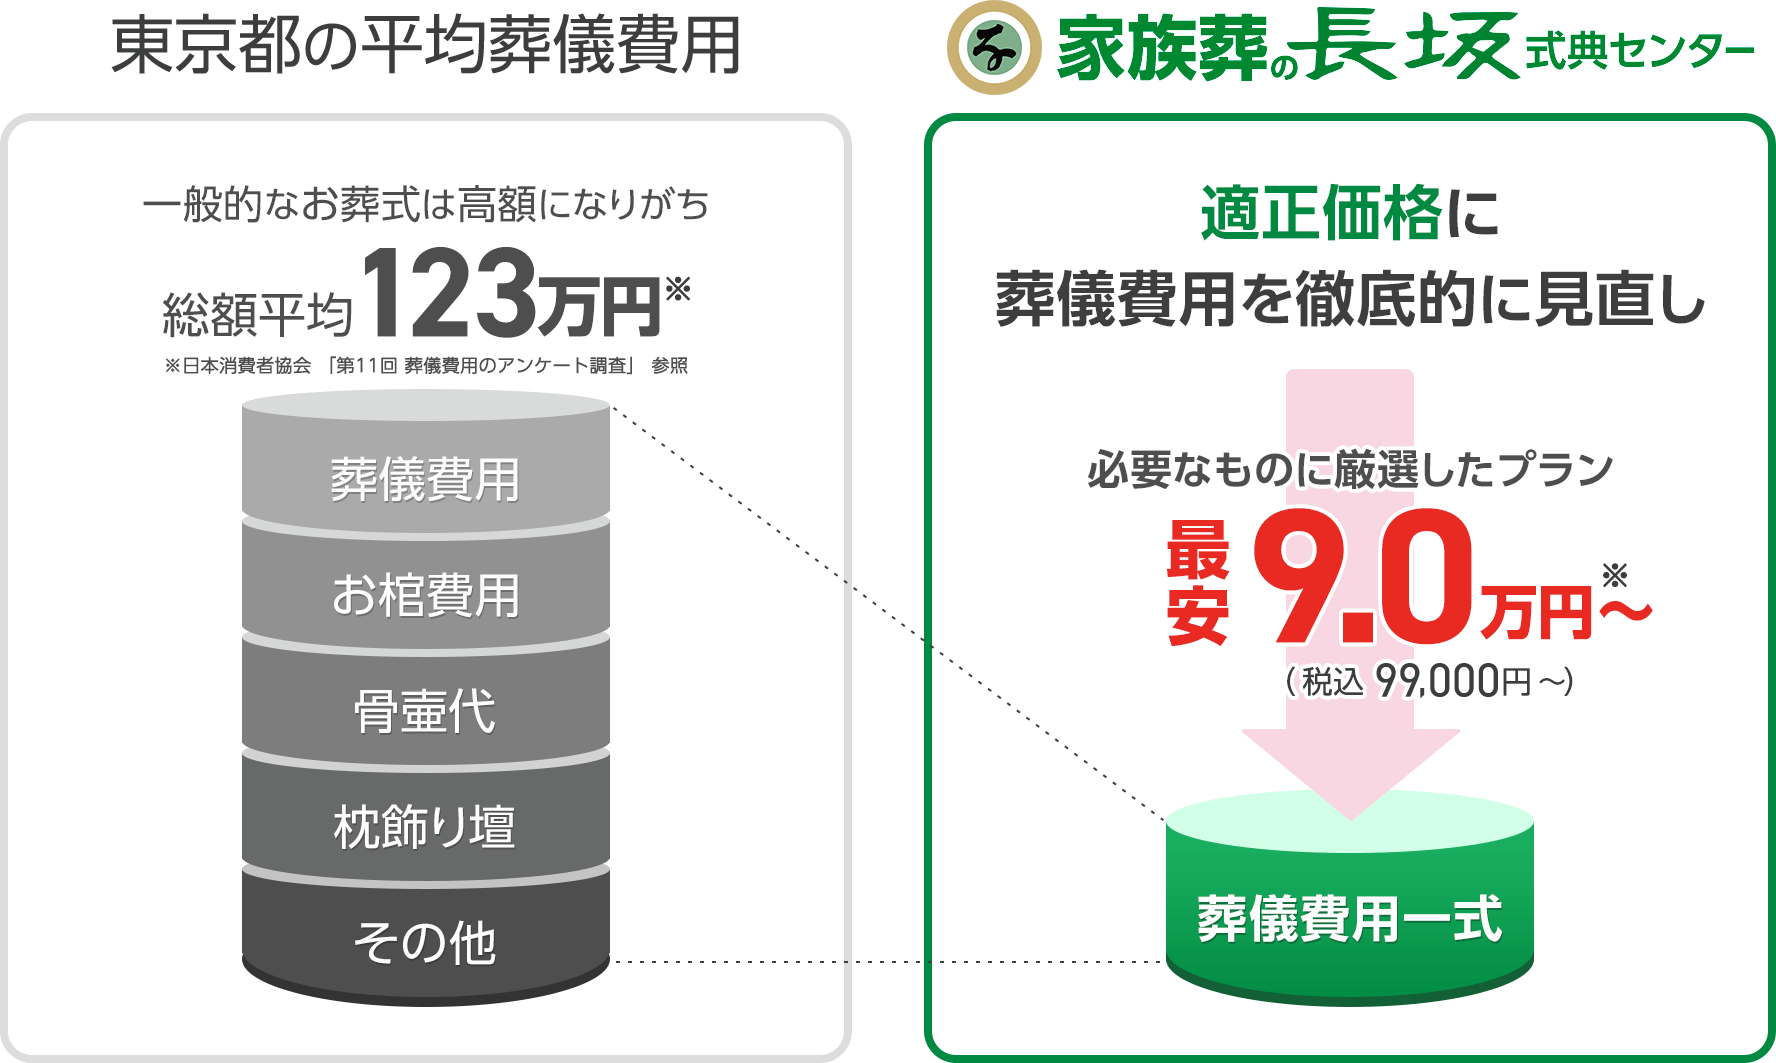 東京都の平均葬儀費用との比較